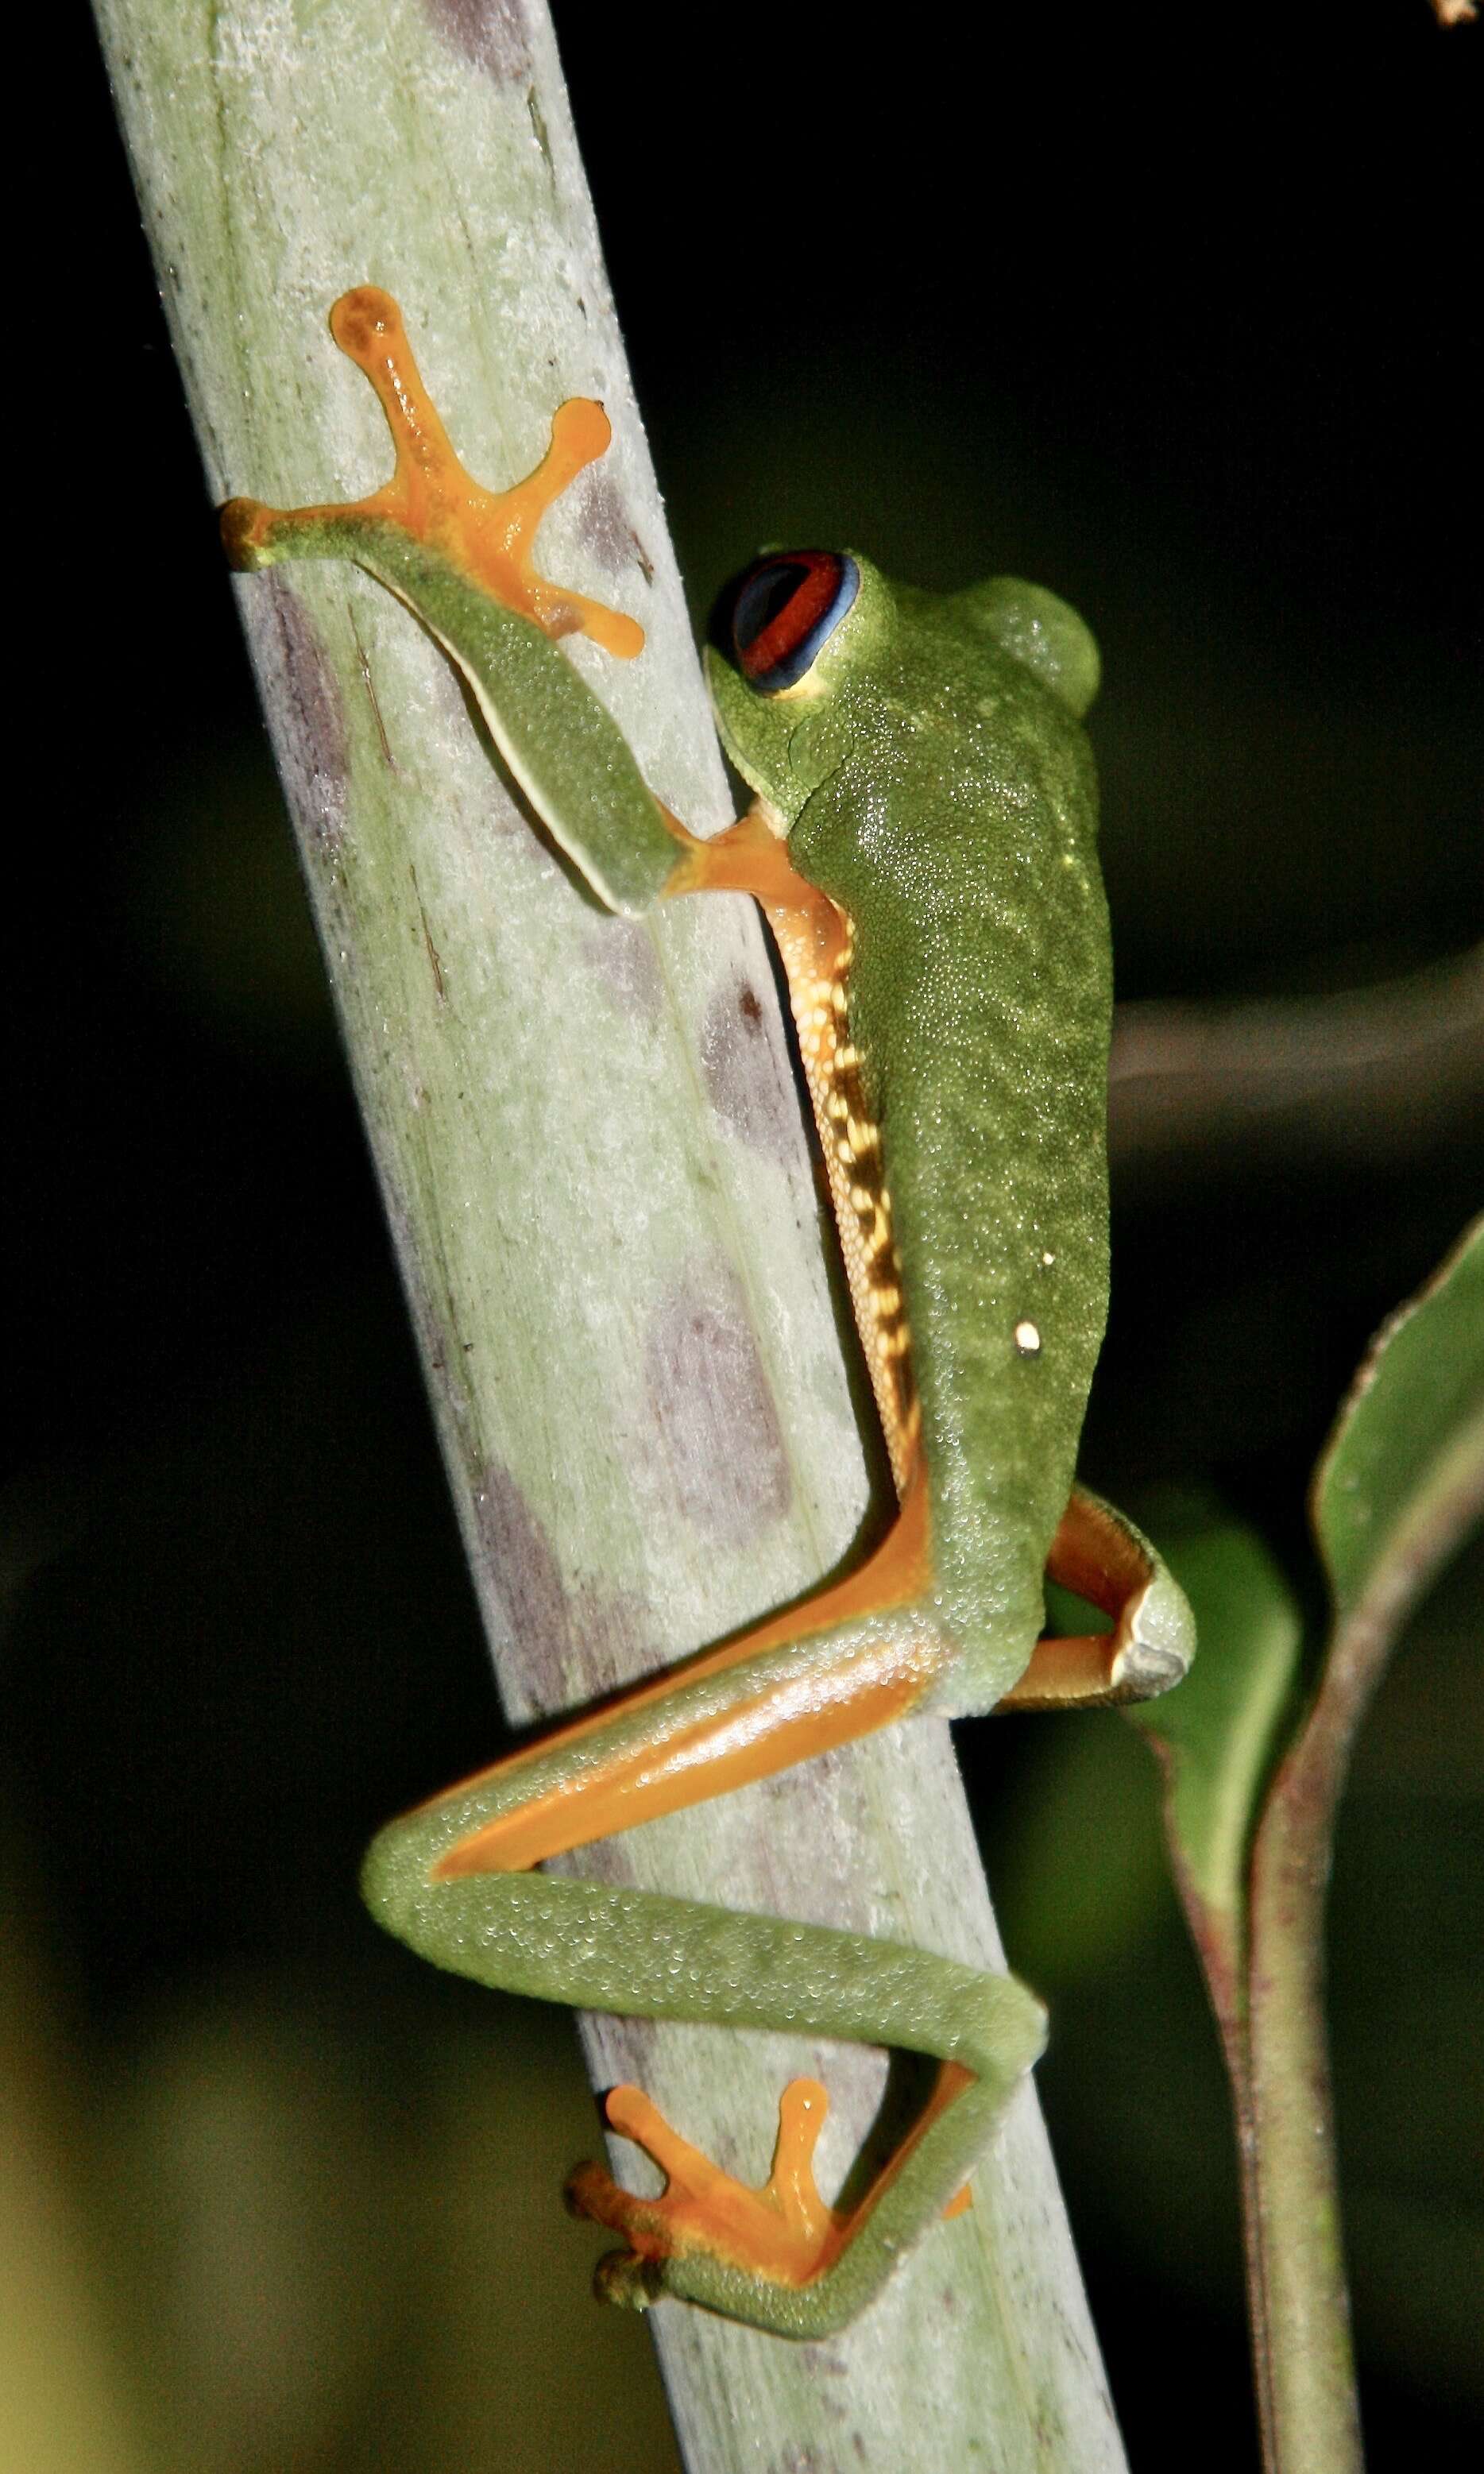 Image of Red-eyed Leaf frog